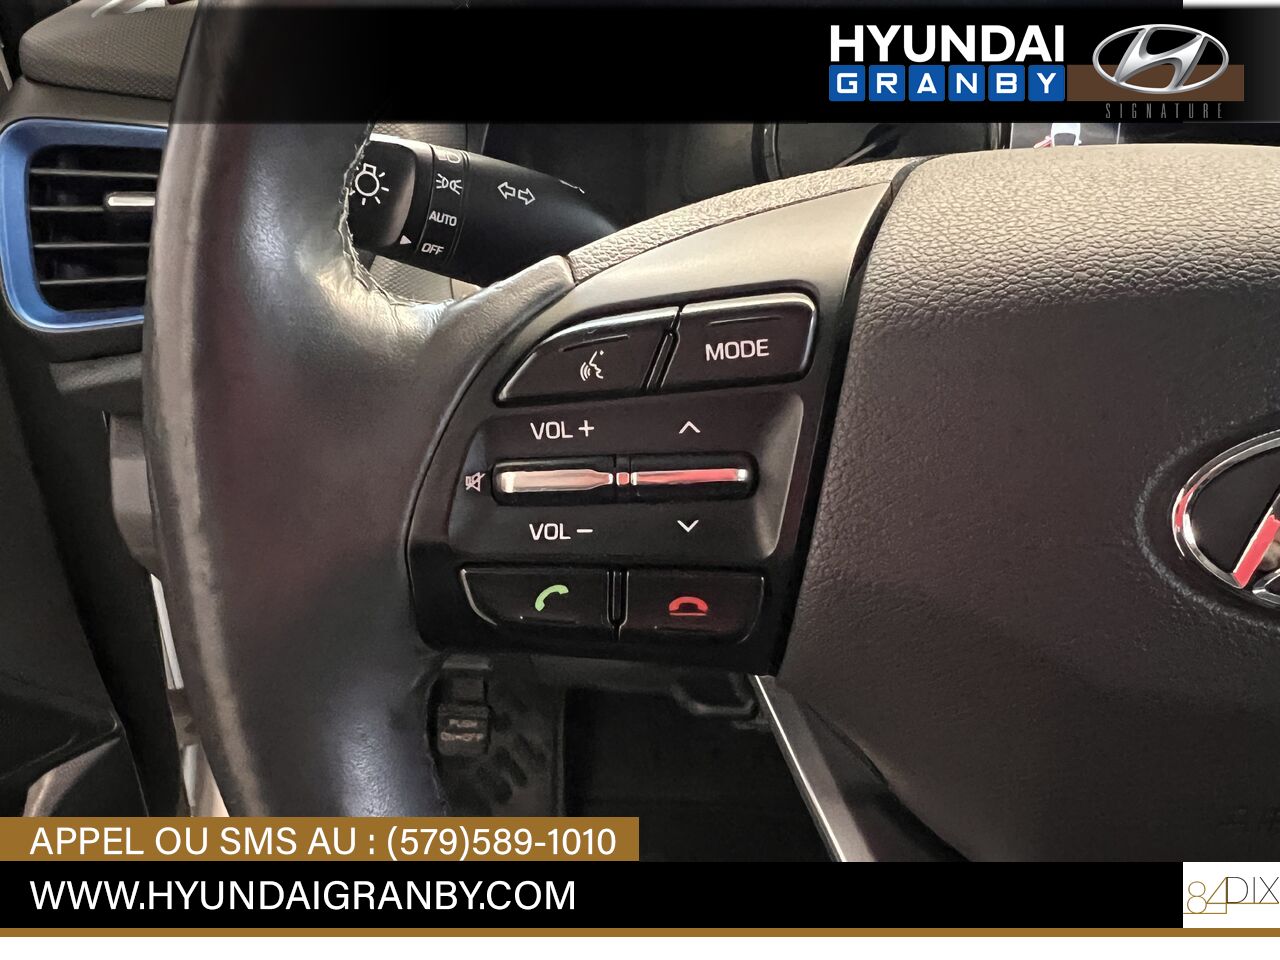 Hyundai Ioniq hybride 2017 Granby - photo #15